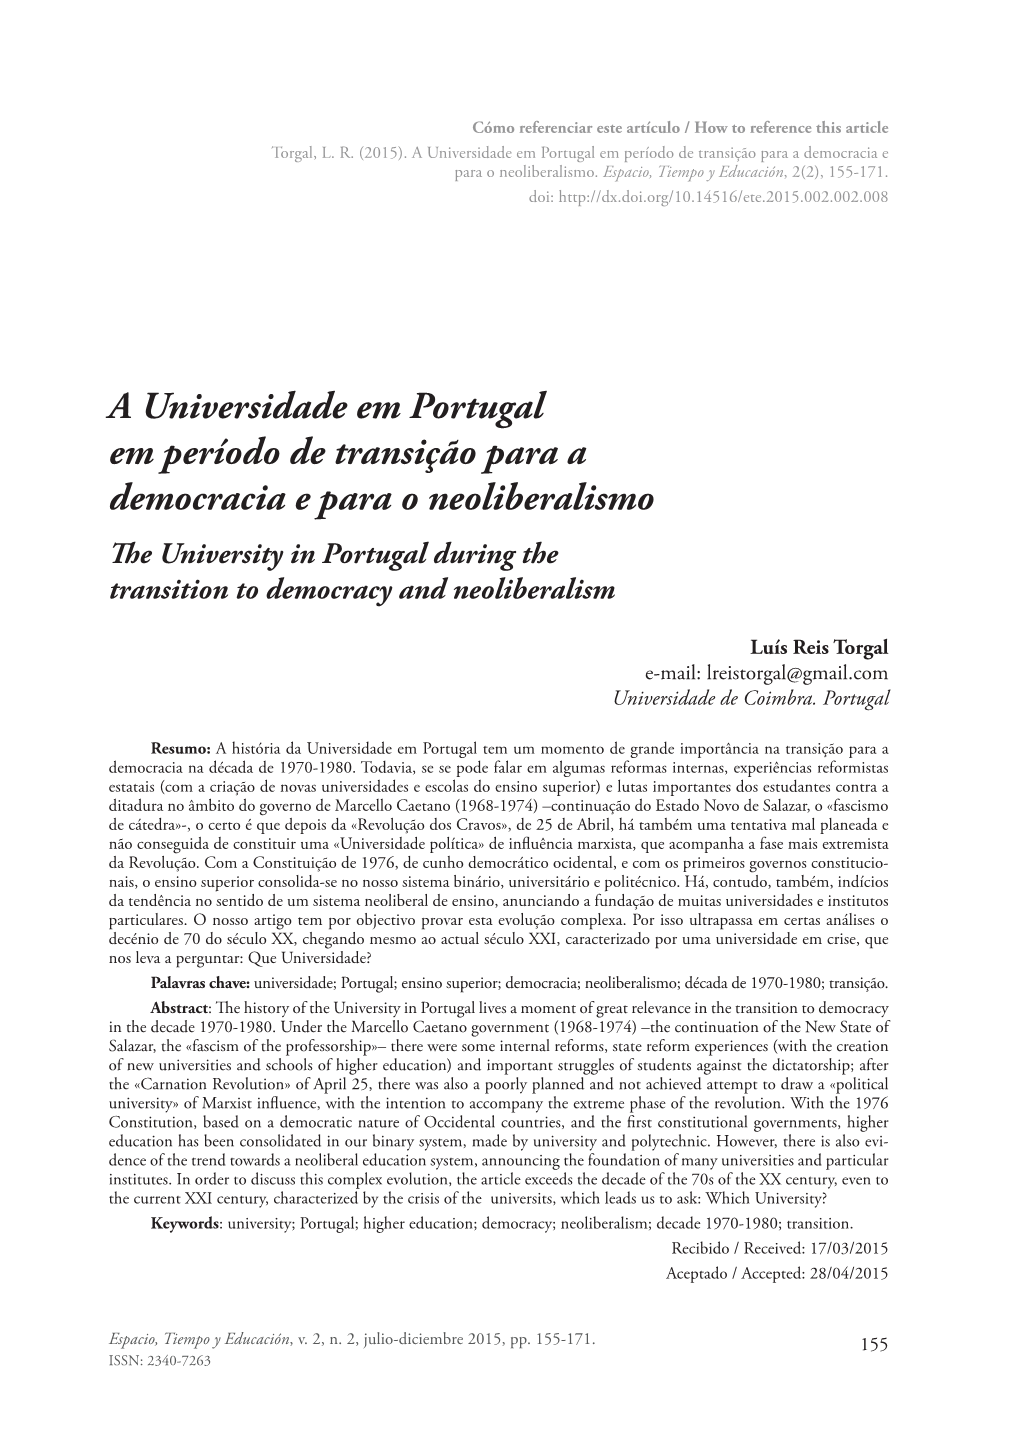 A Universidade Em Portugal Em Período De Transição Para a Democracia E Para O Neoliberalismo